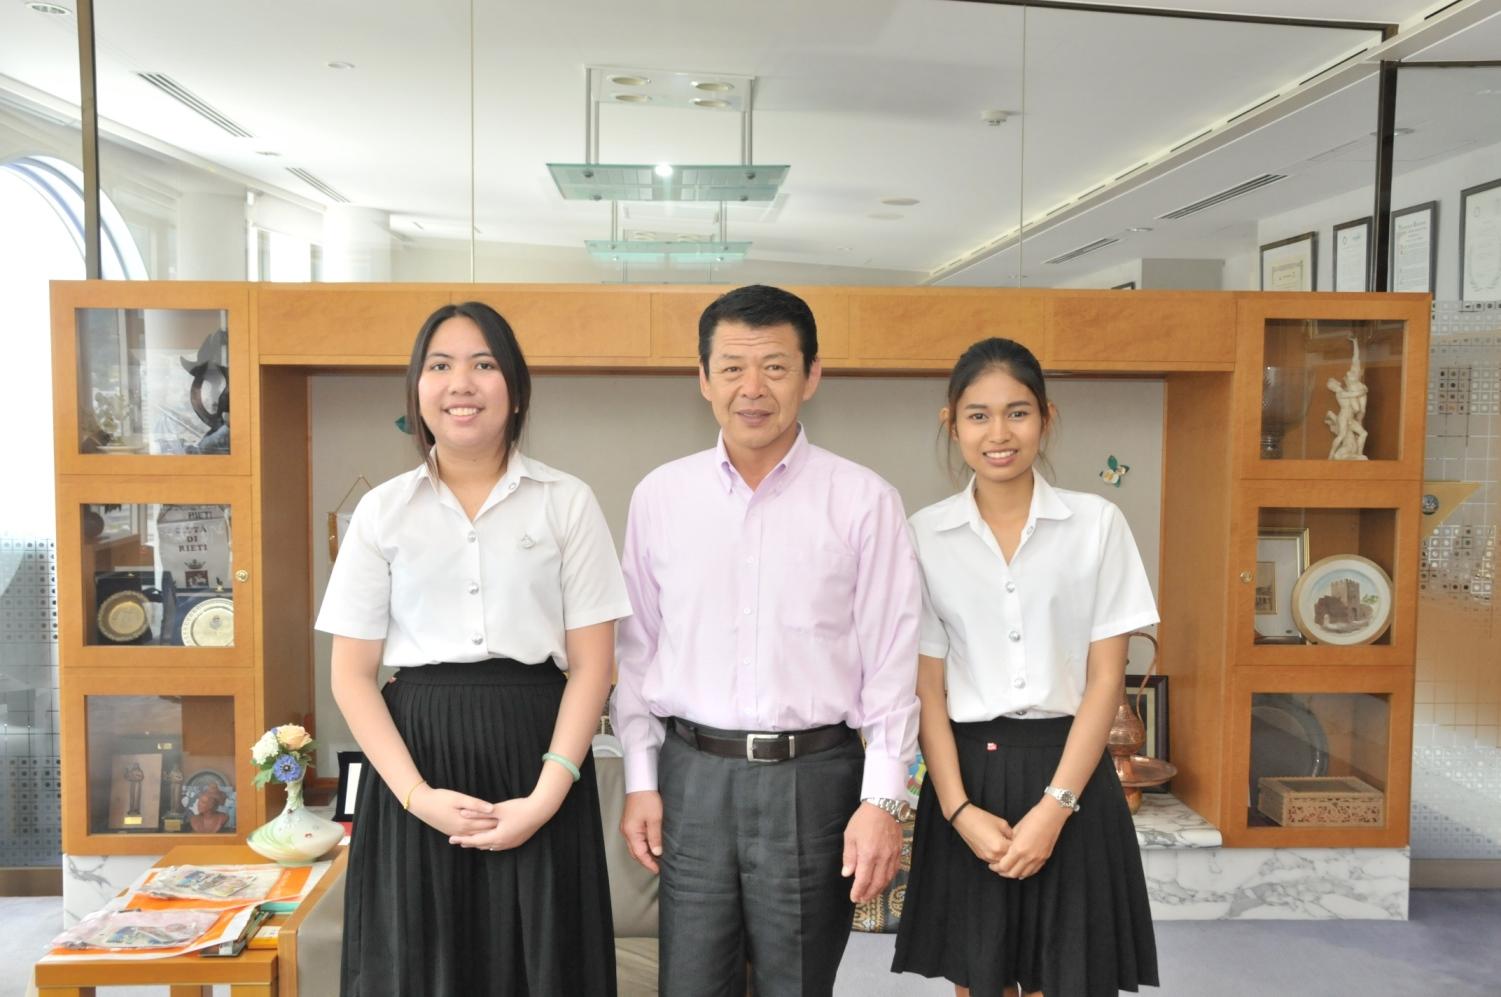 2017年6月8日タイ・ナレースワン大学学生2人の両横に並ぶ市長の写真